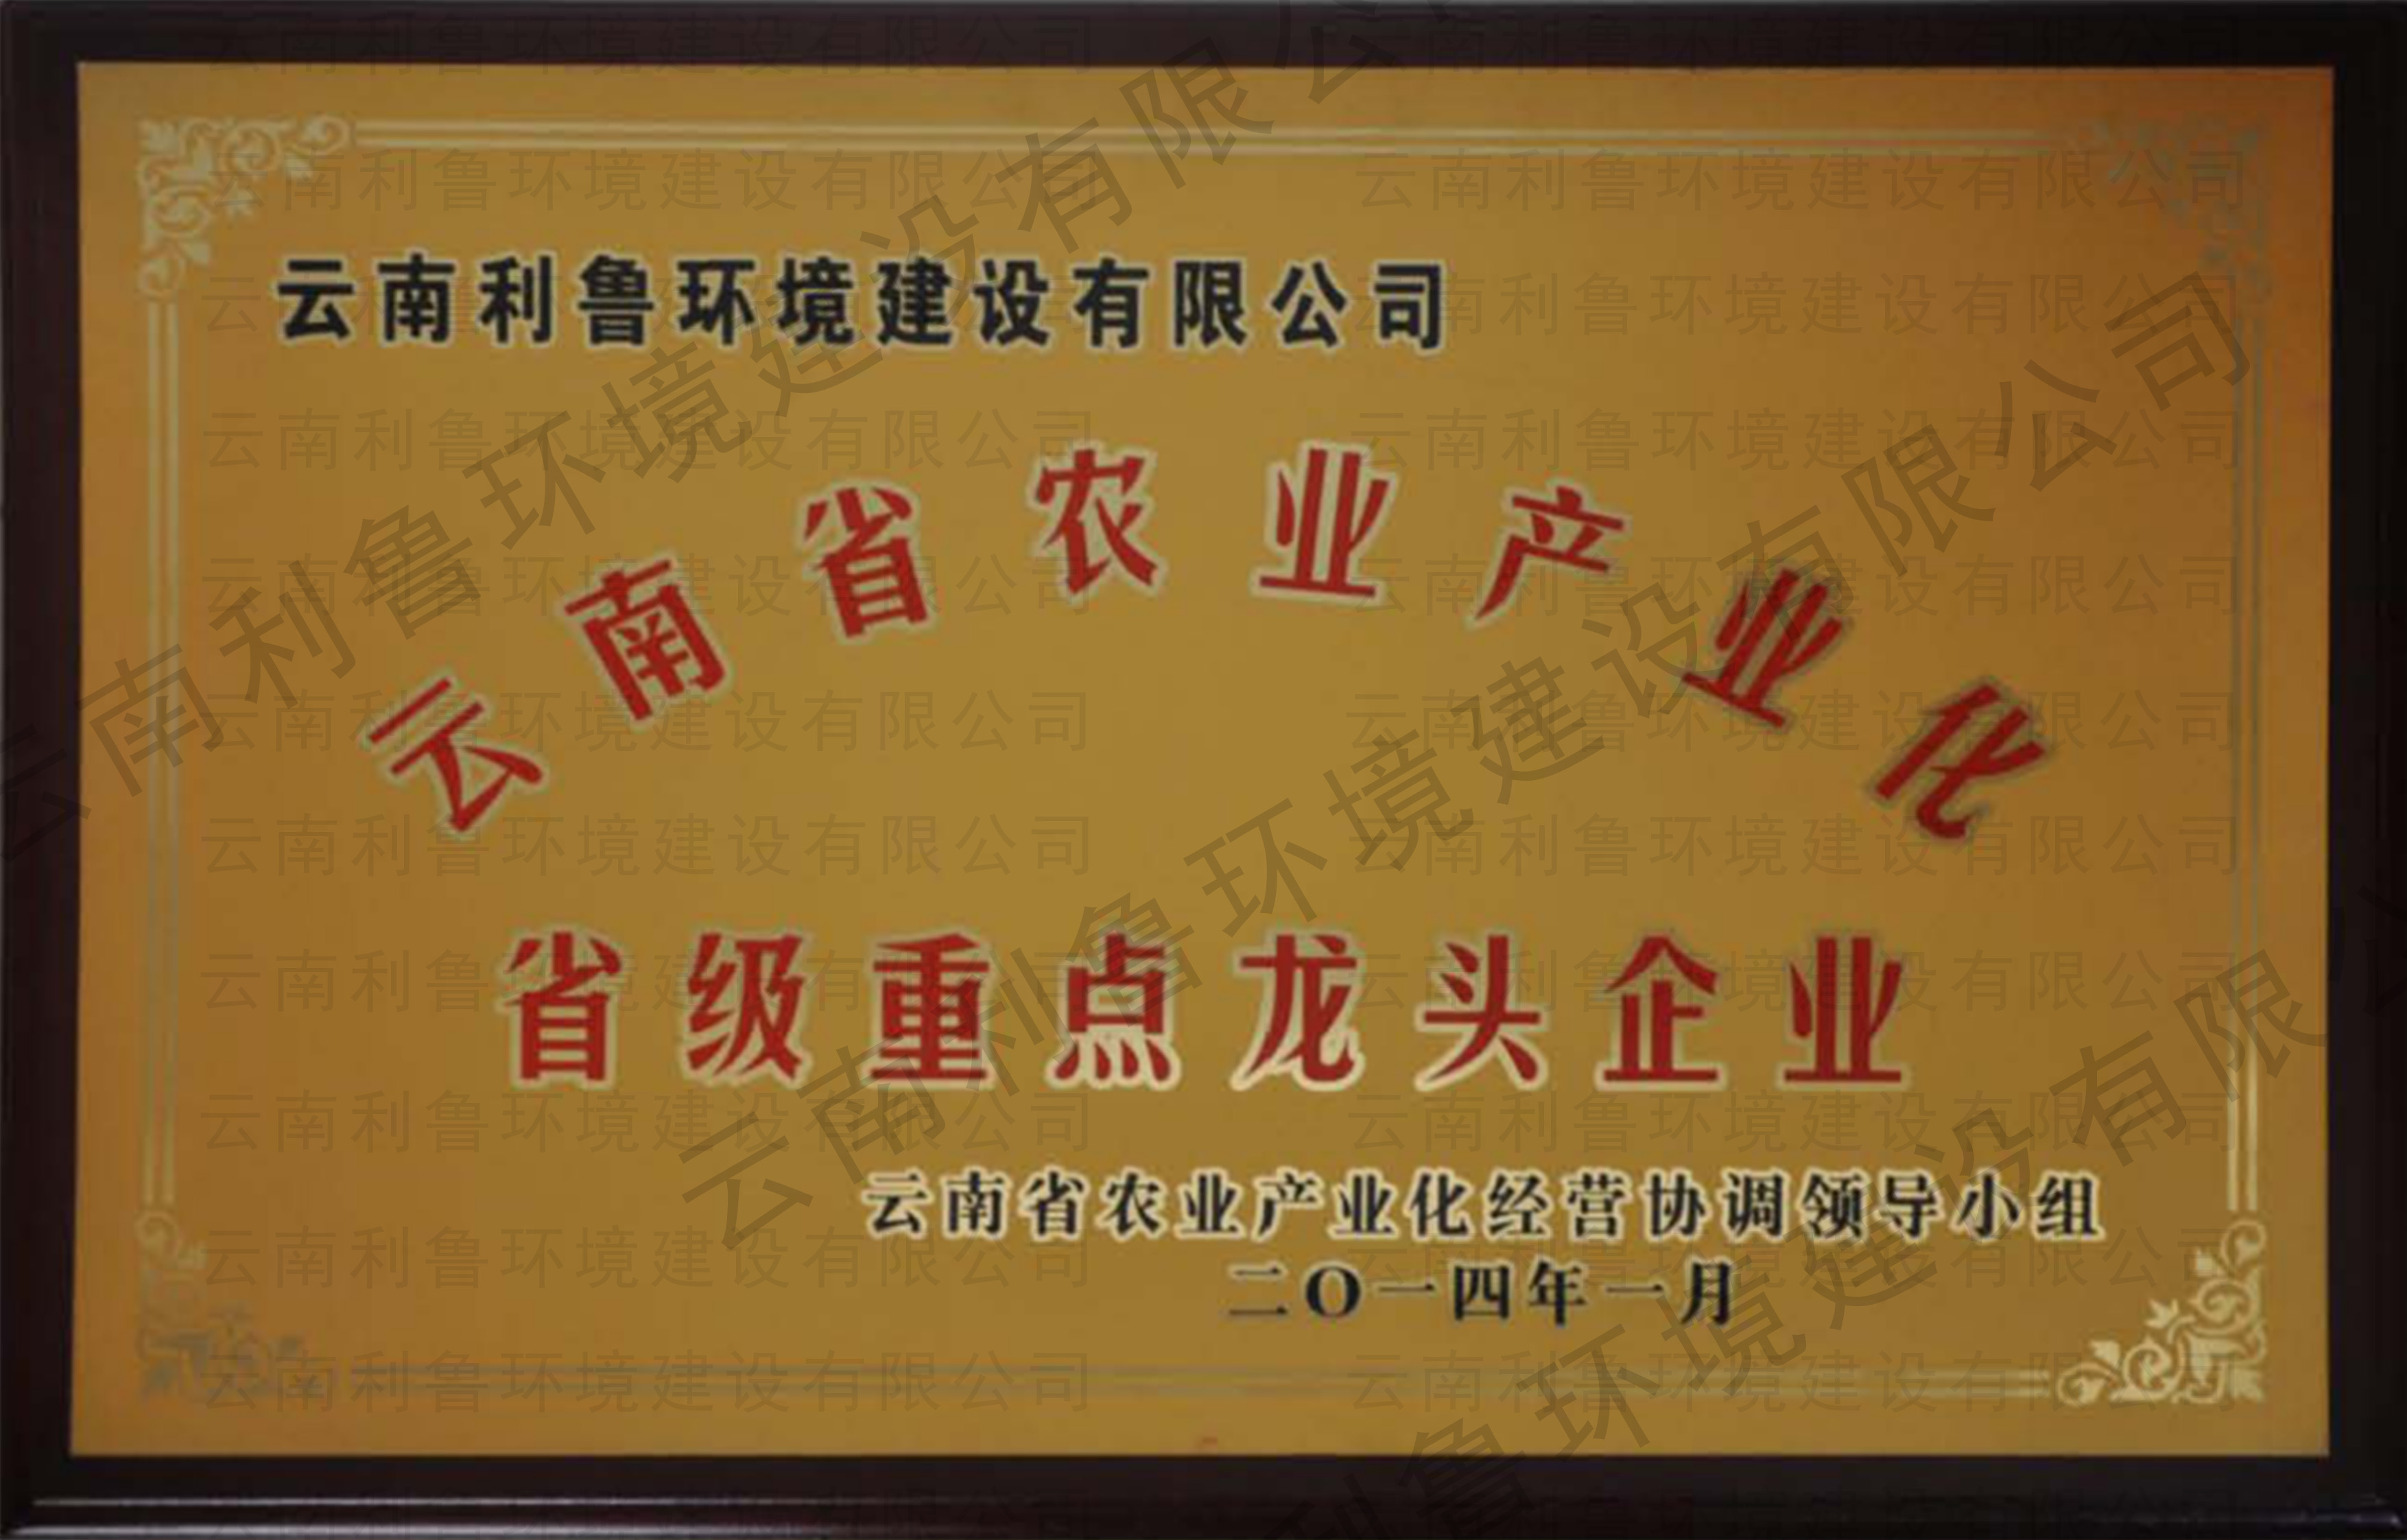 云南省产业农业化省级重点龙头企业